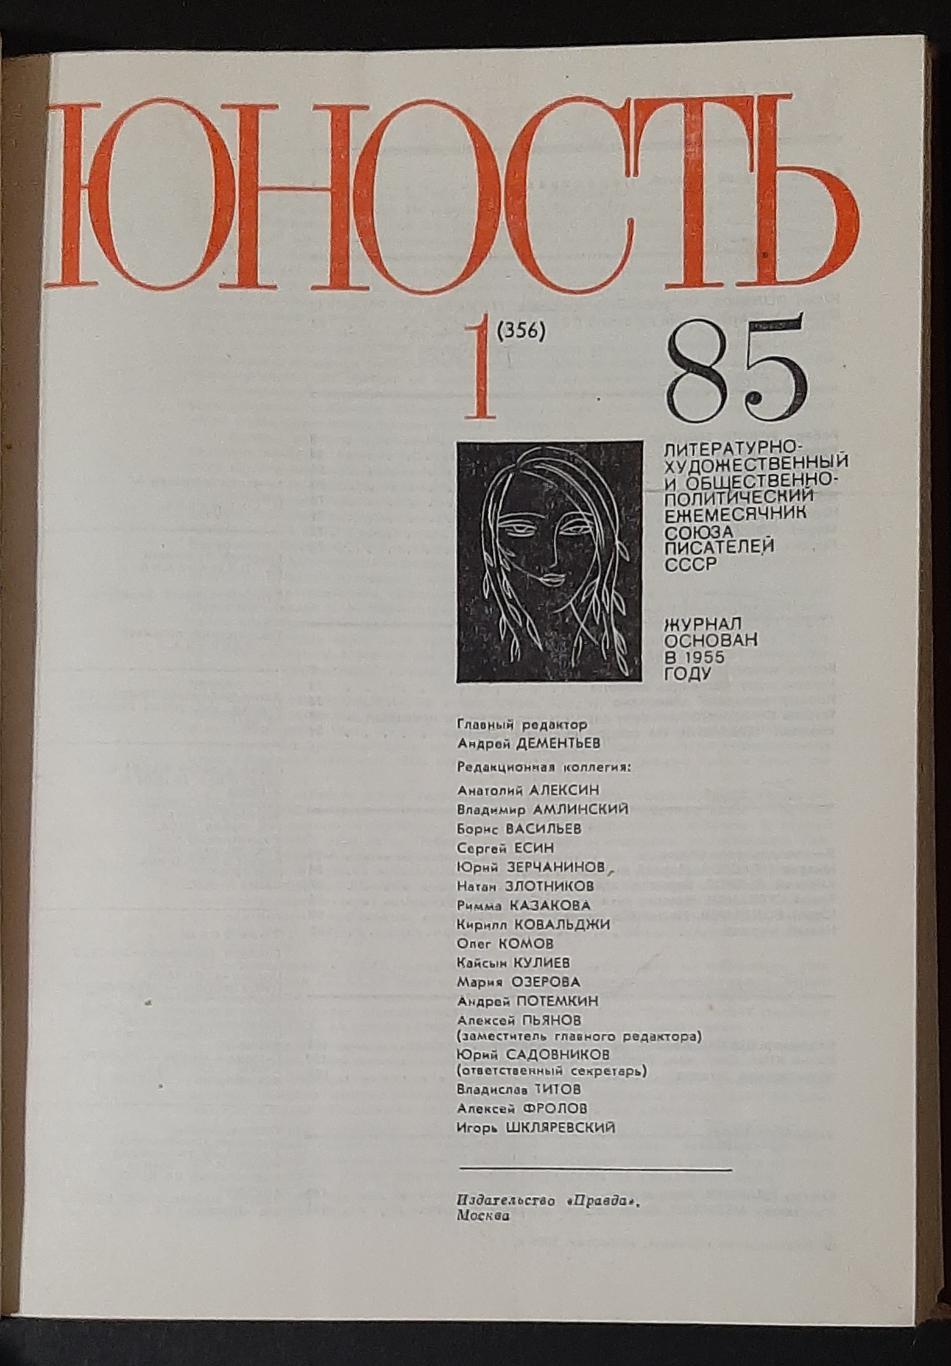 Журнал Юность #1 - 4 1985 Тверда обкладинка 1